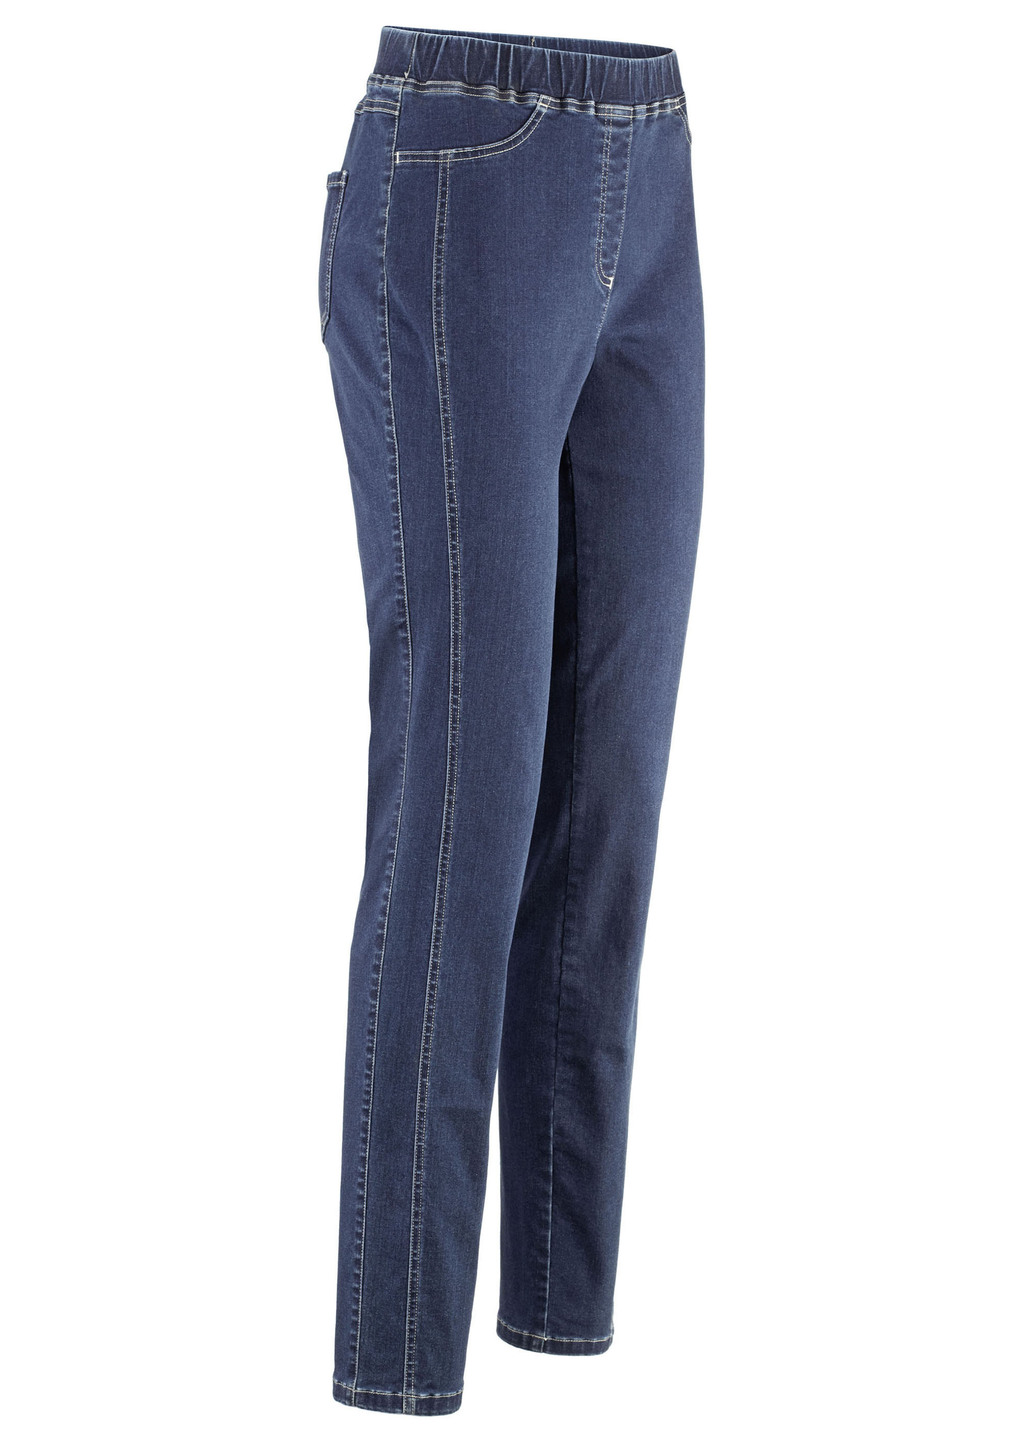 Jeans in komfortabler Schlupfform, Jeansblau, Größe 54 von COSMA